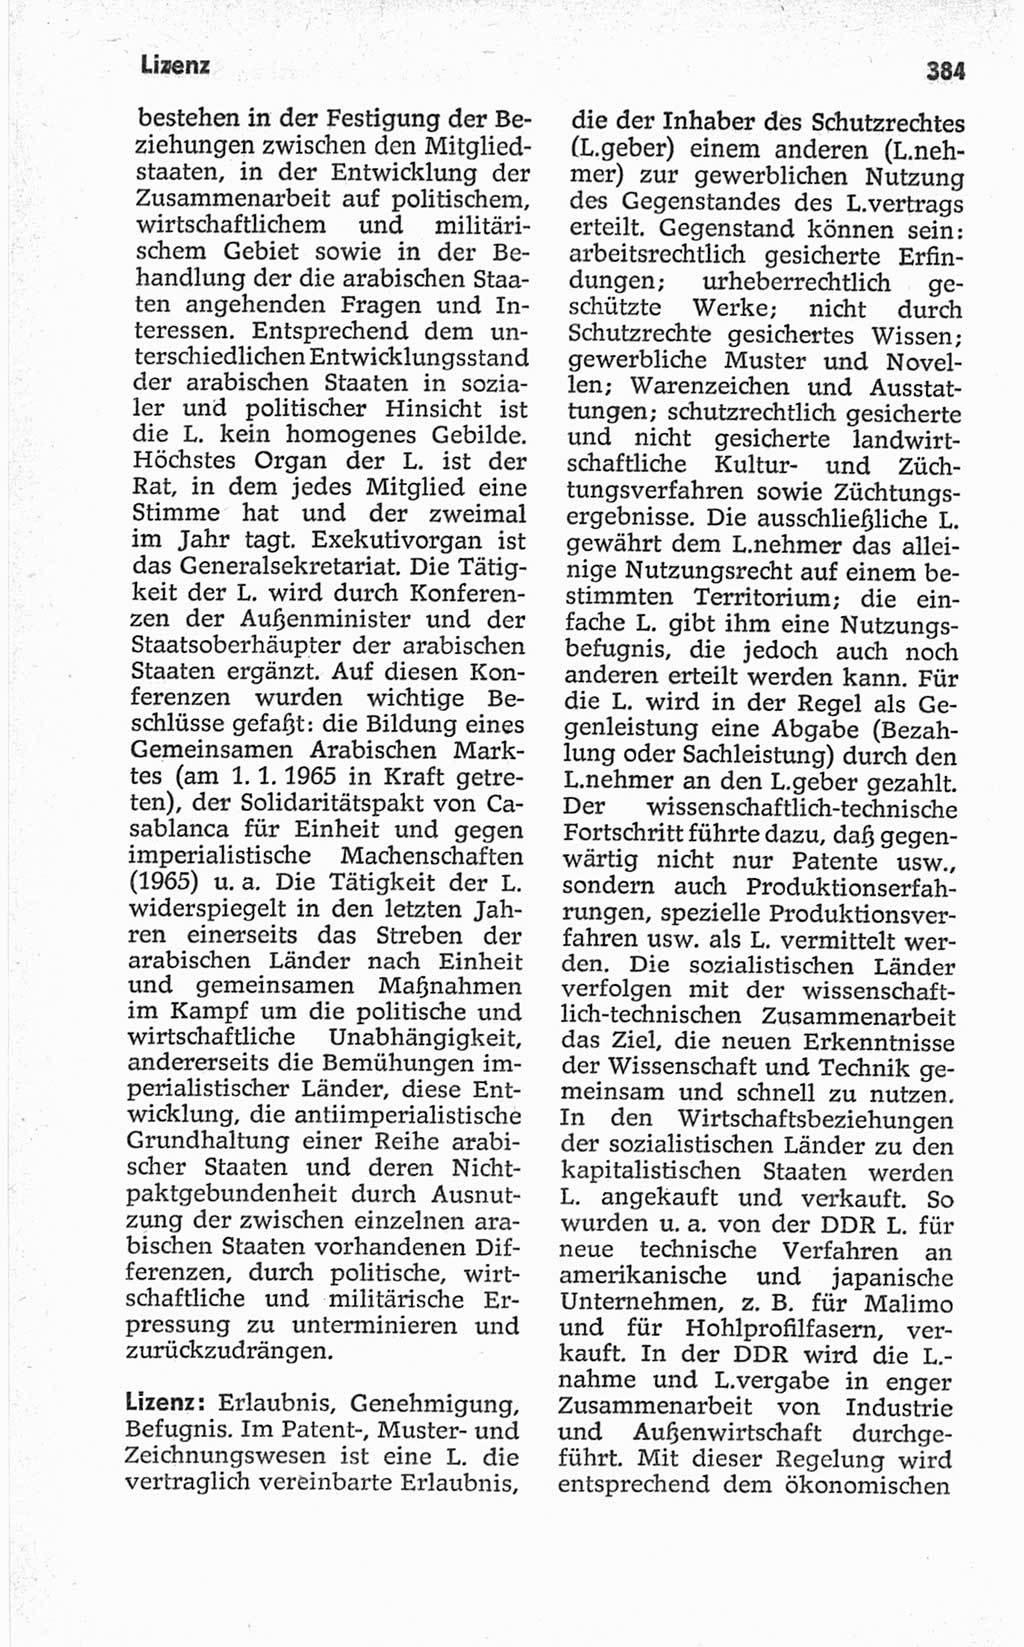 Kleines politisches Wörterbuch [Deutsche Demokratische Republik (DDR)] 1967, Seite 384 (Kl. pol. Wb. DDR 1967, S. 384)